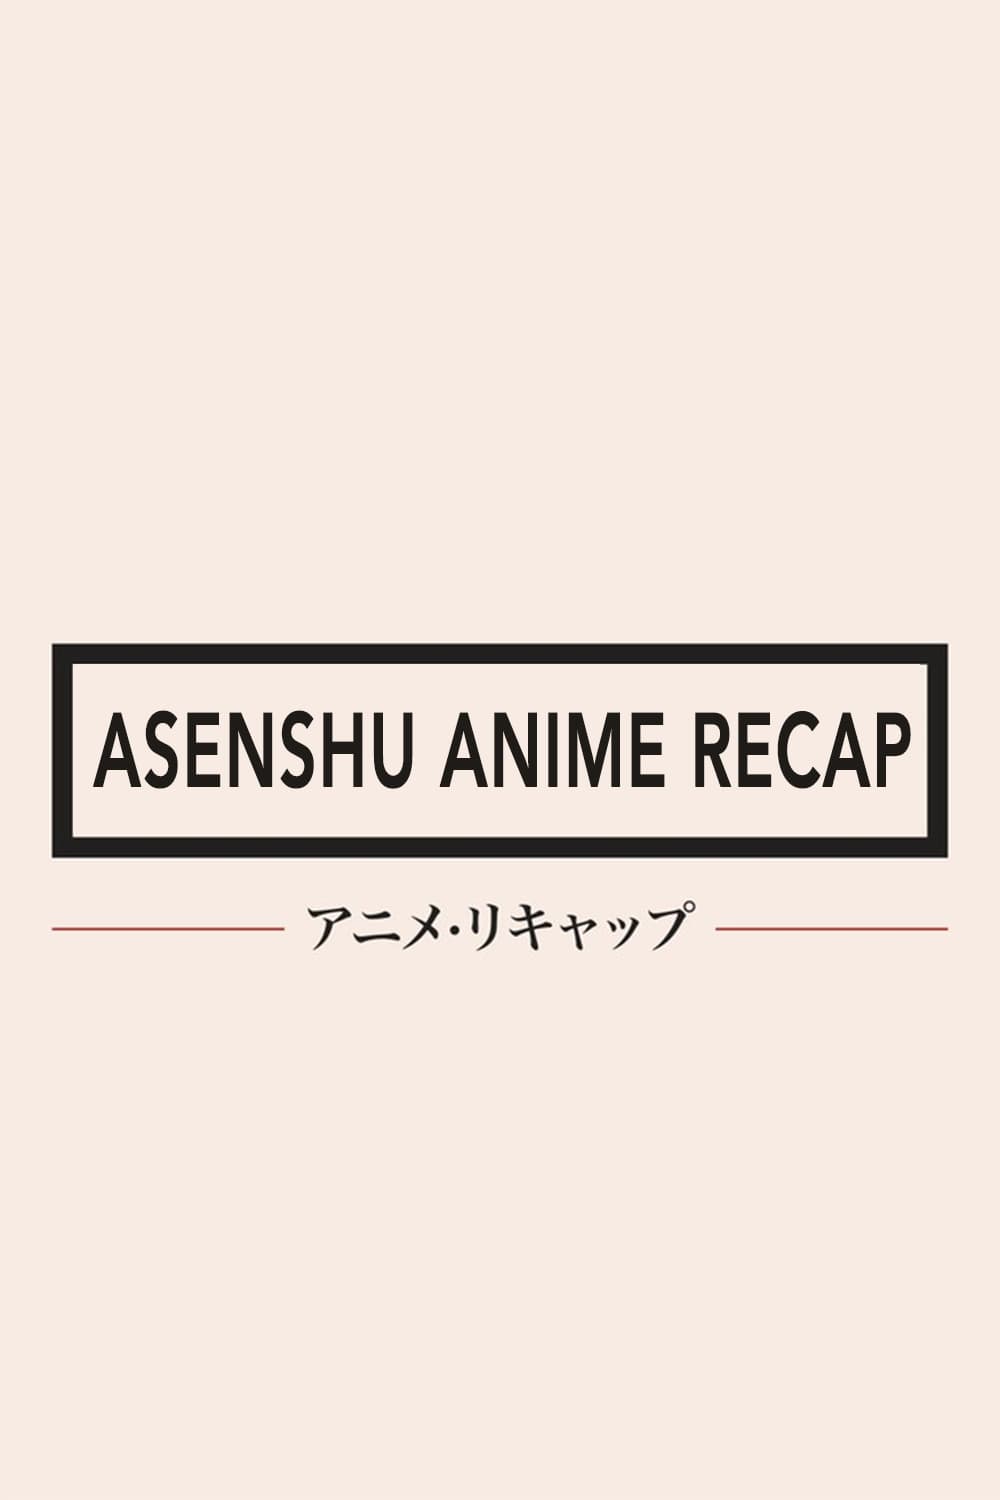 Asenshu Anime Recap